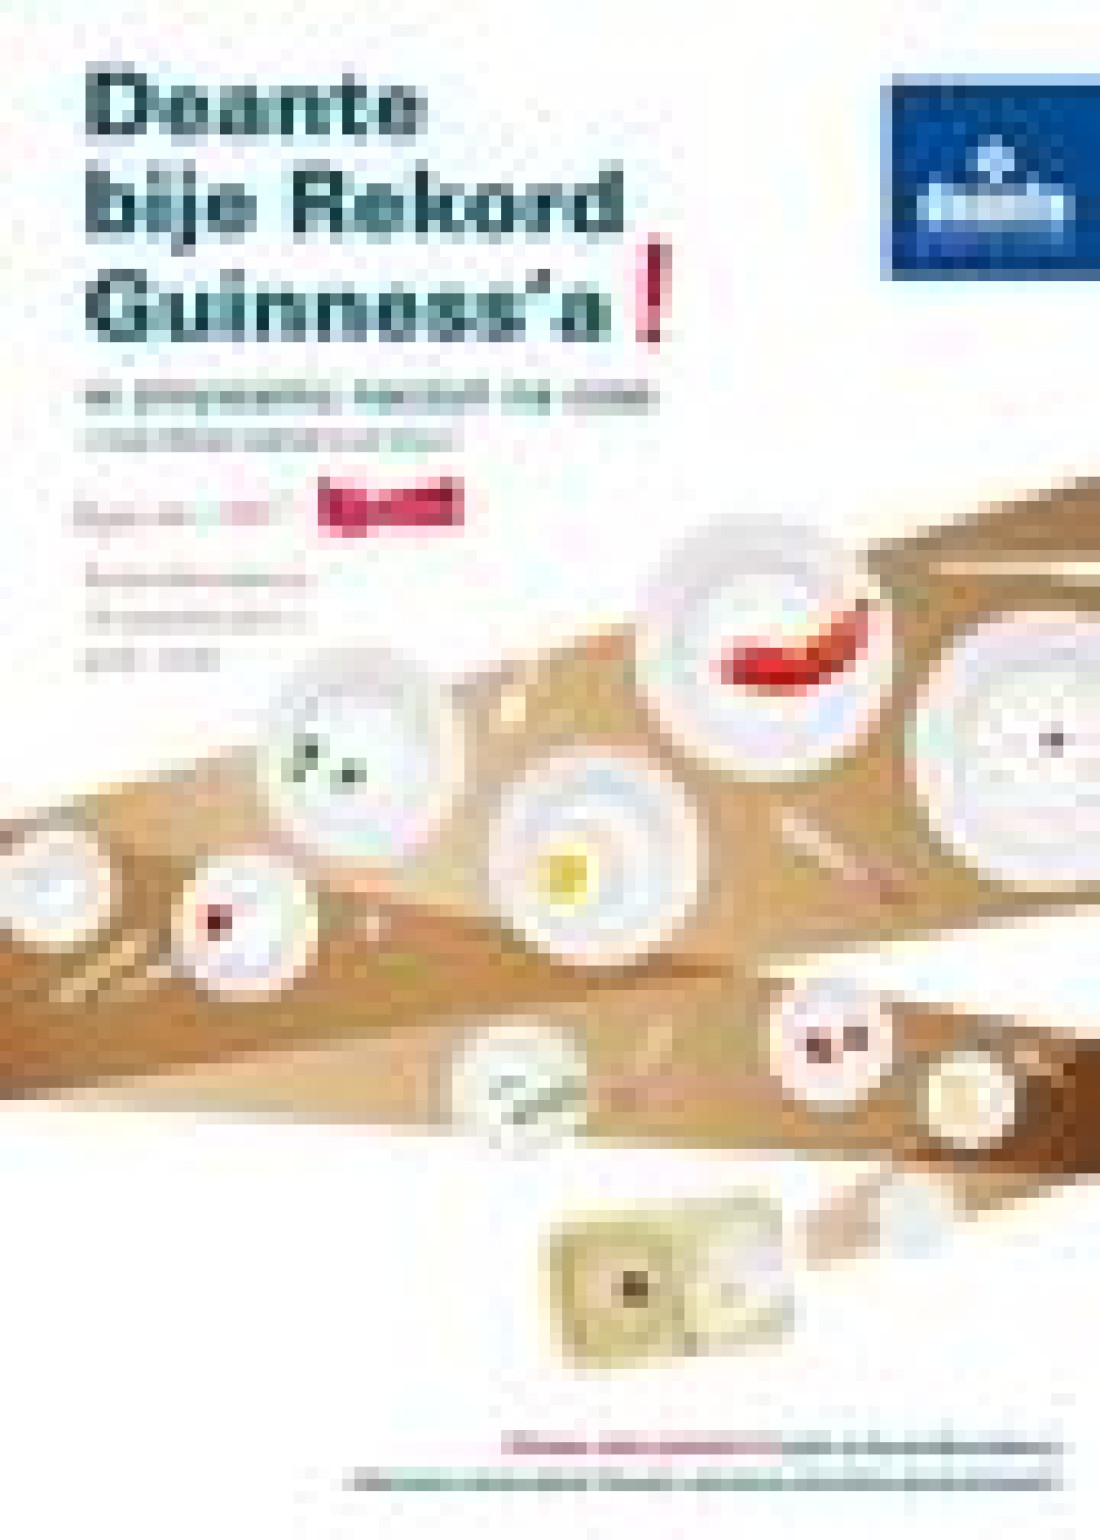 Łódź: Rekord Guinness'a w zmywaniu talerzy na czas